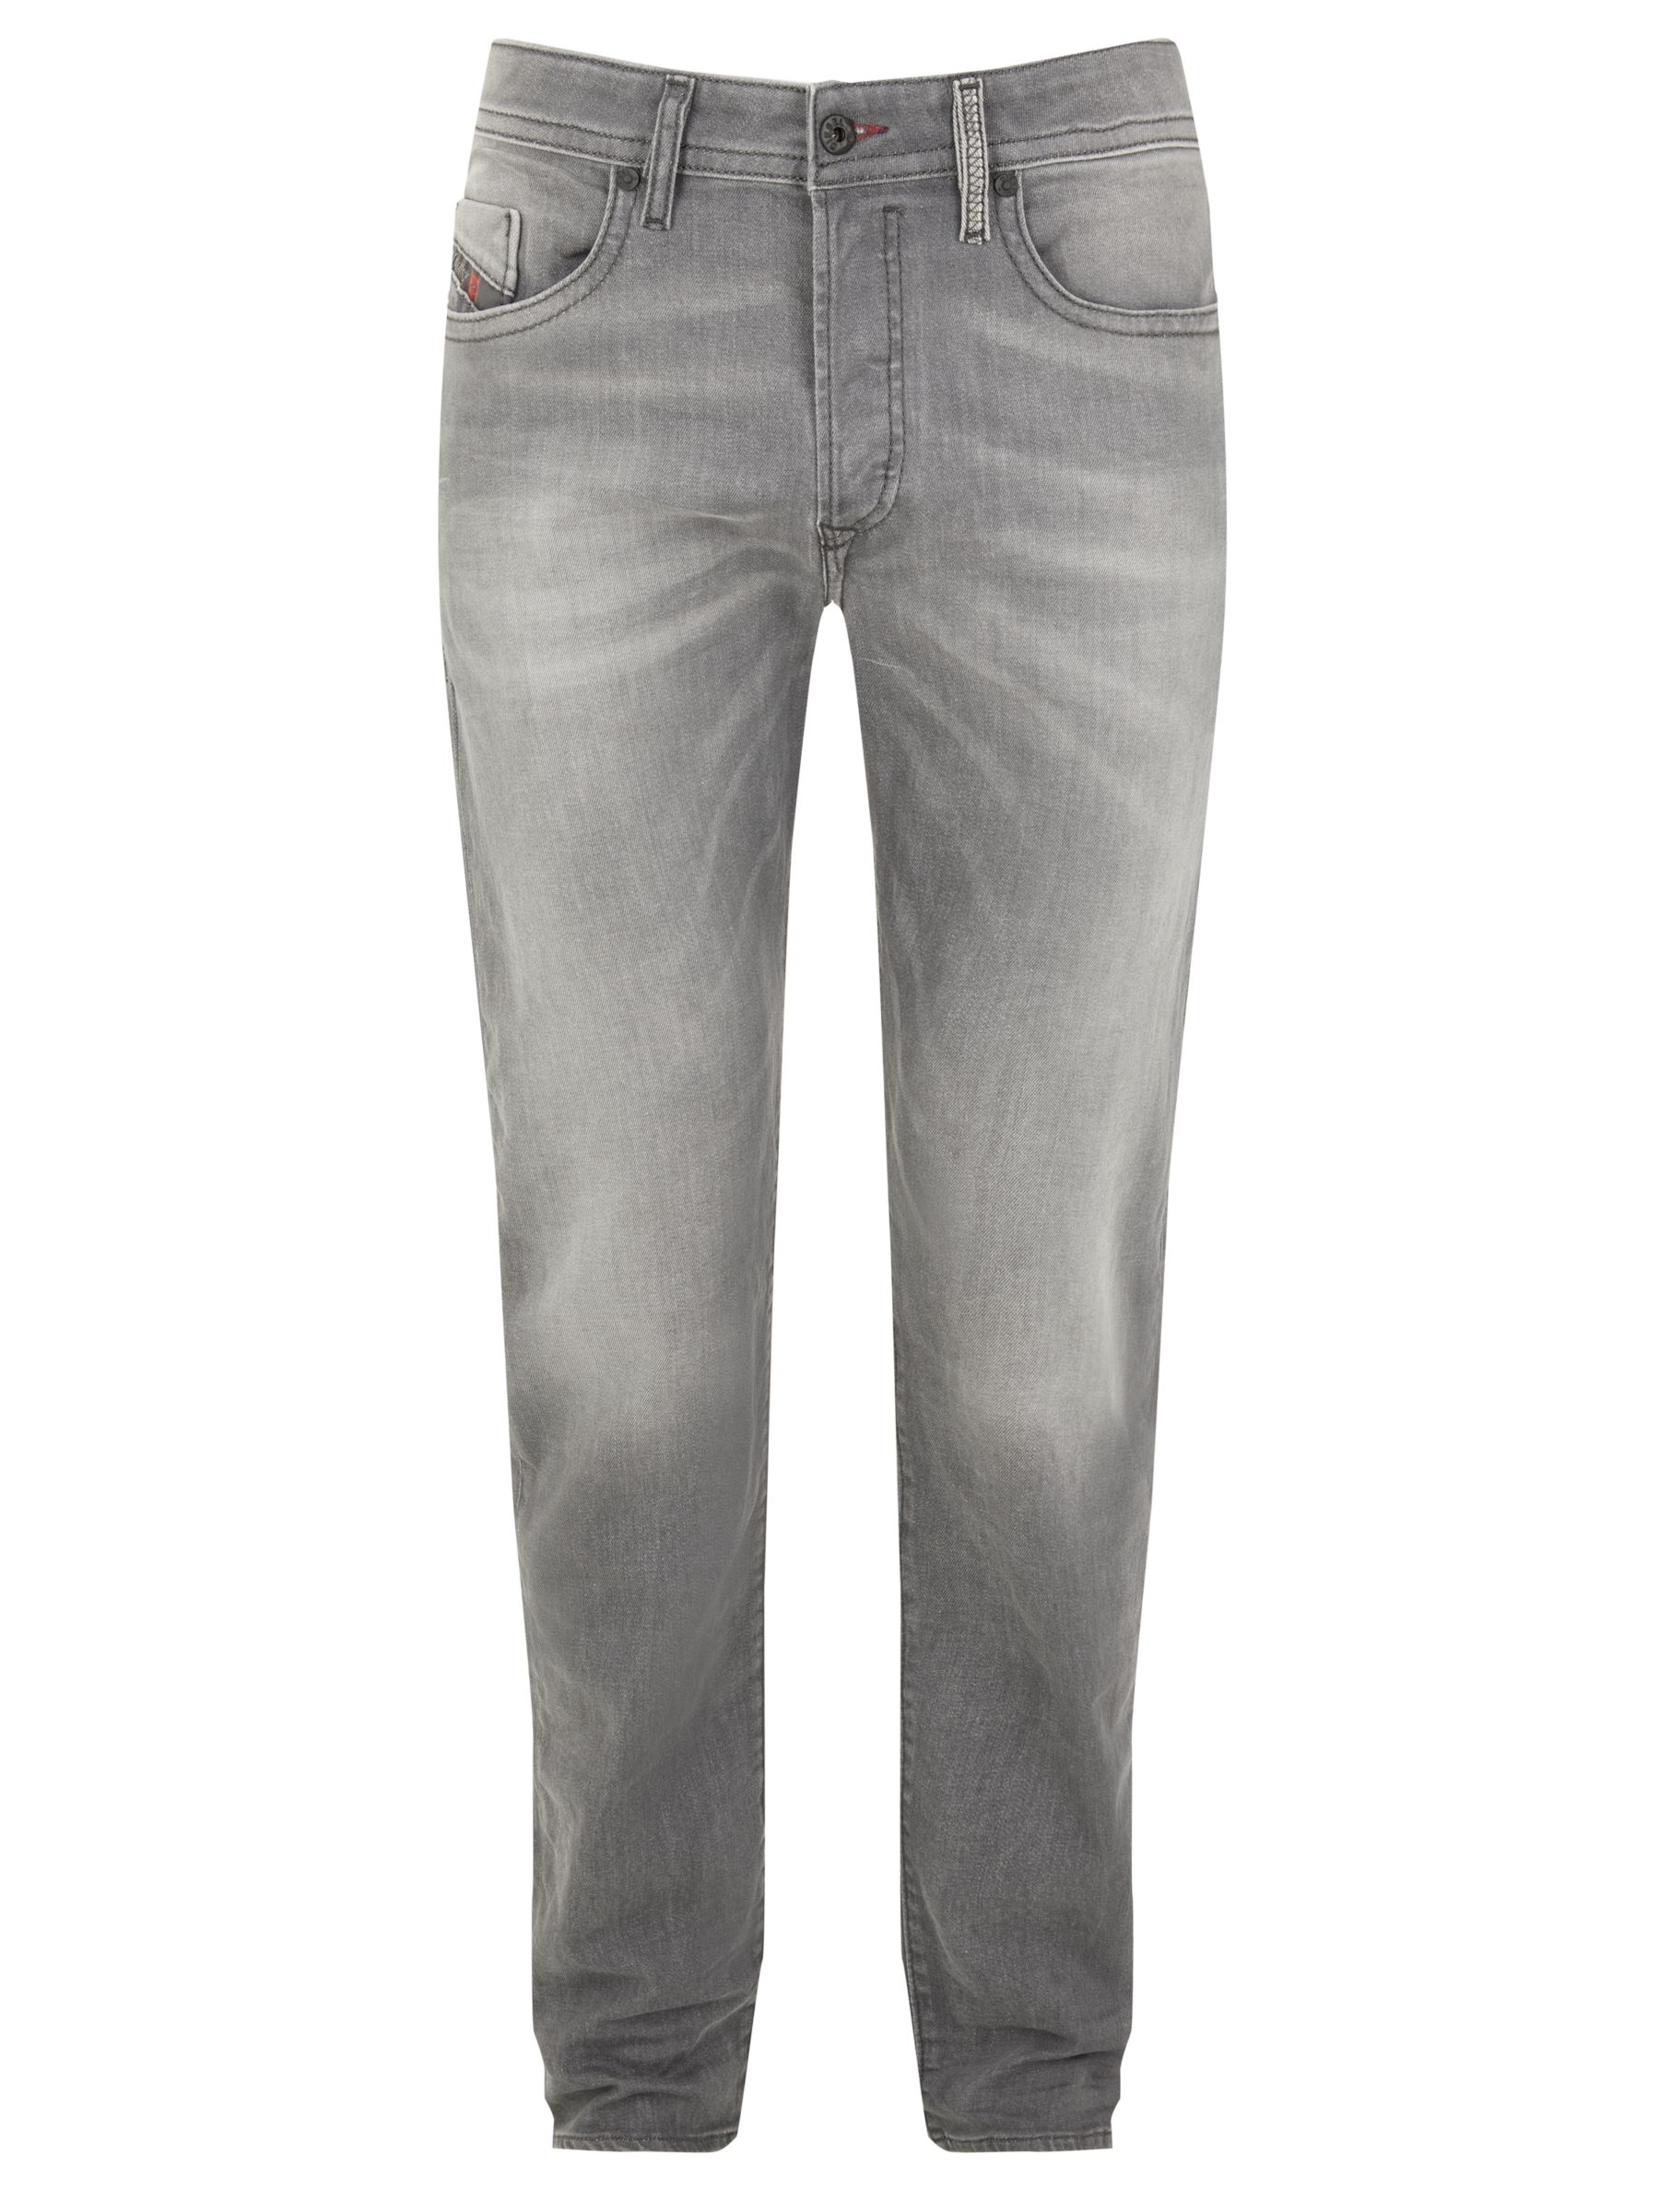 diesel buster jeans grey